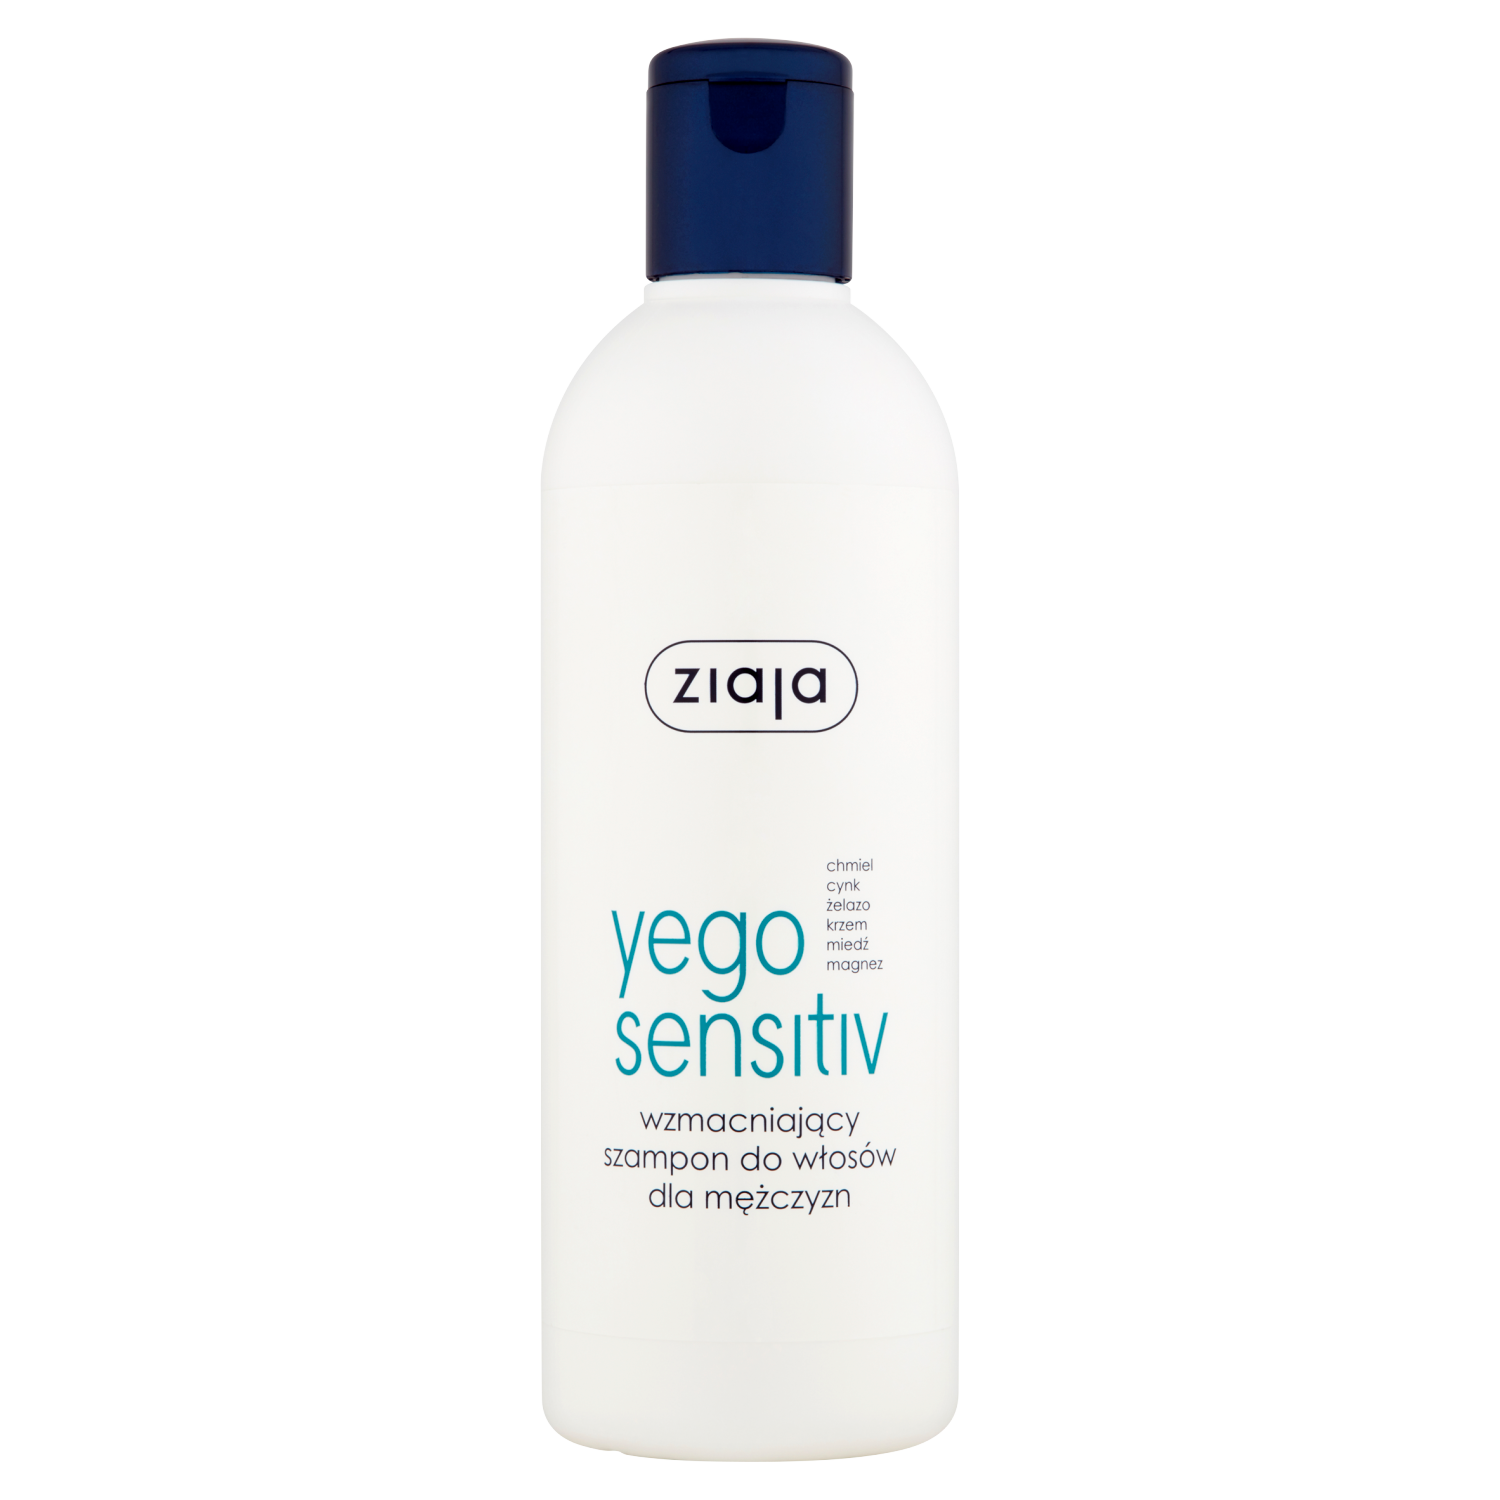 ziaja yego sensitiv wzmacniający szampon do włosów 300ml